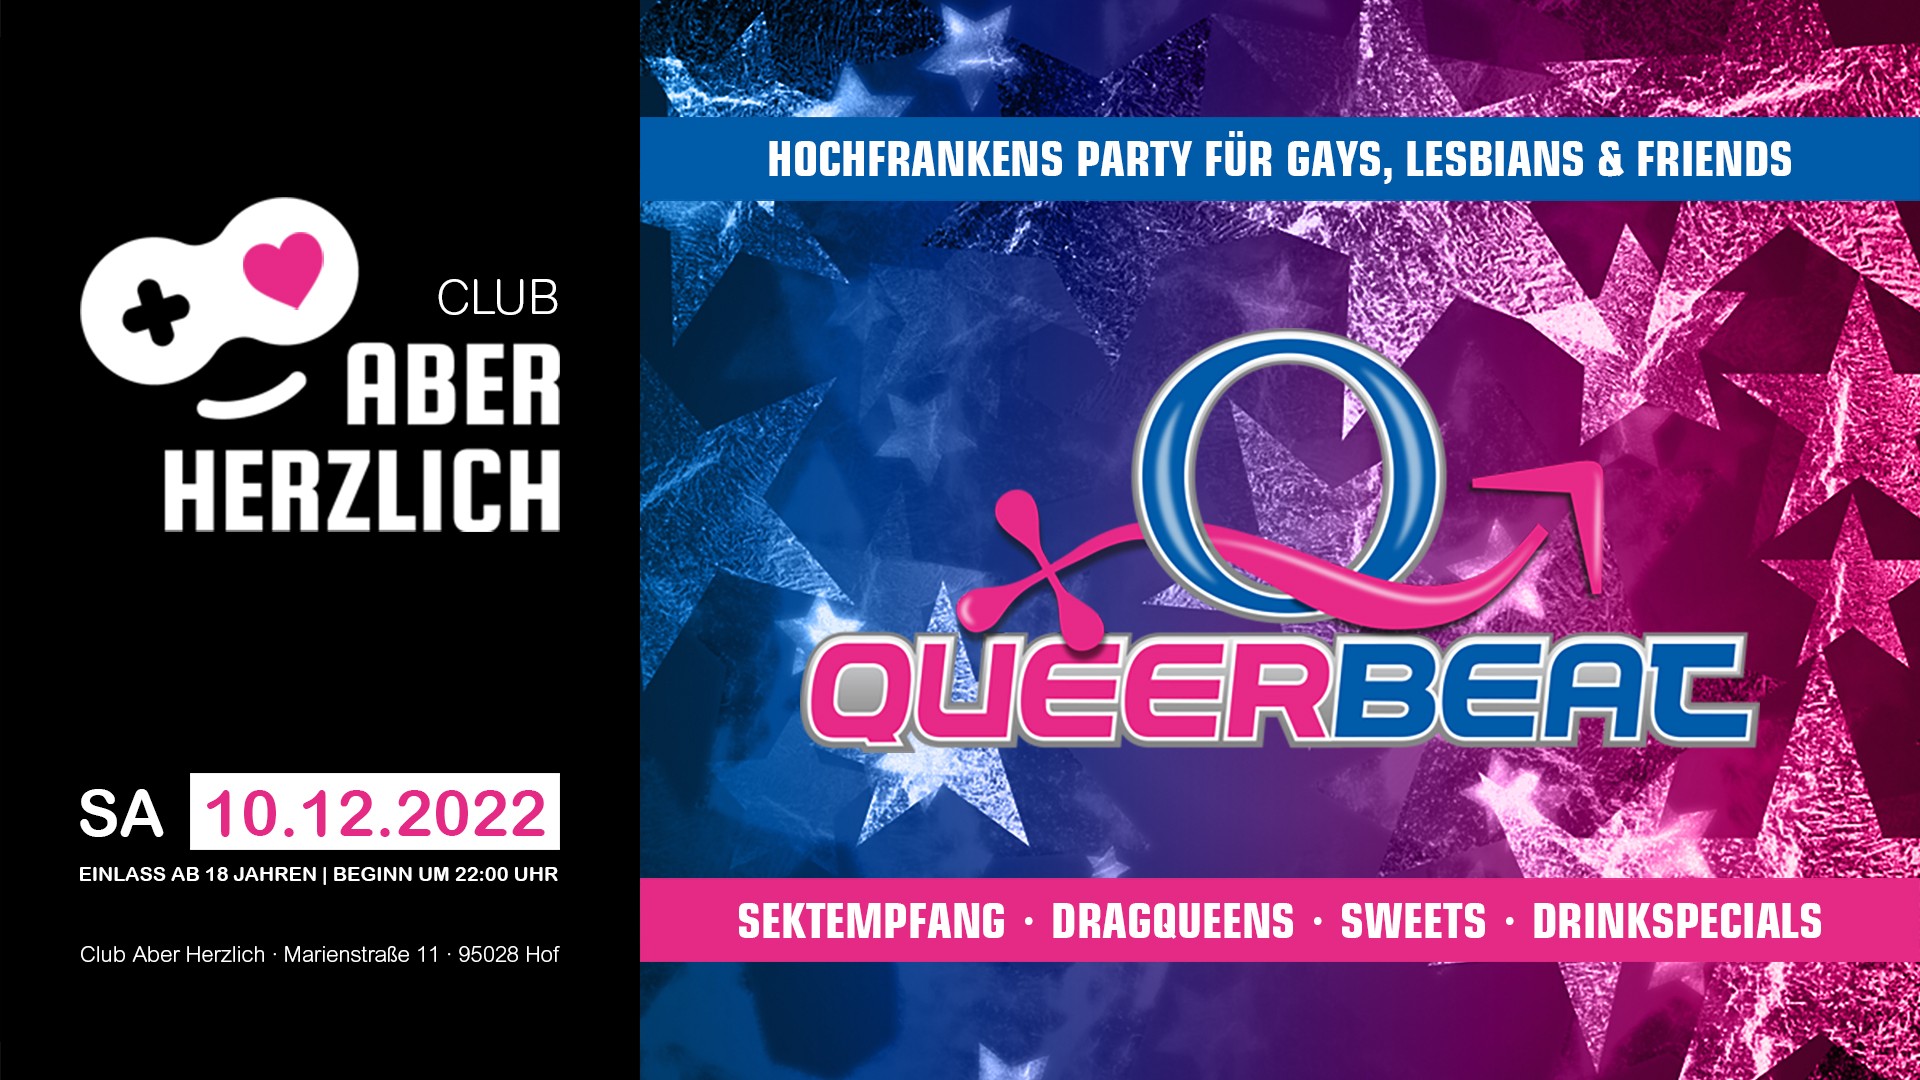 Queerbeat – Hochfrankens Party für Gays, Lesbians & Friends am 10.12.2022 im Club Aber Herzlich